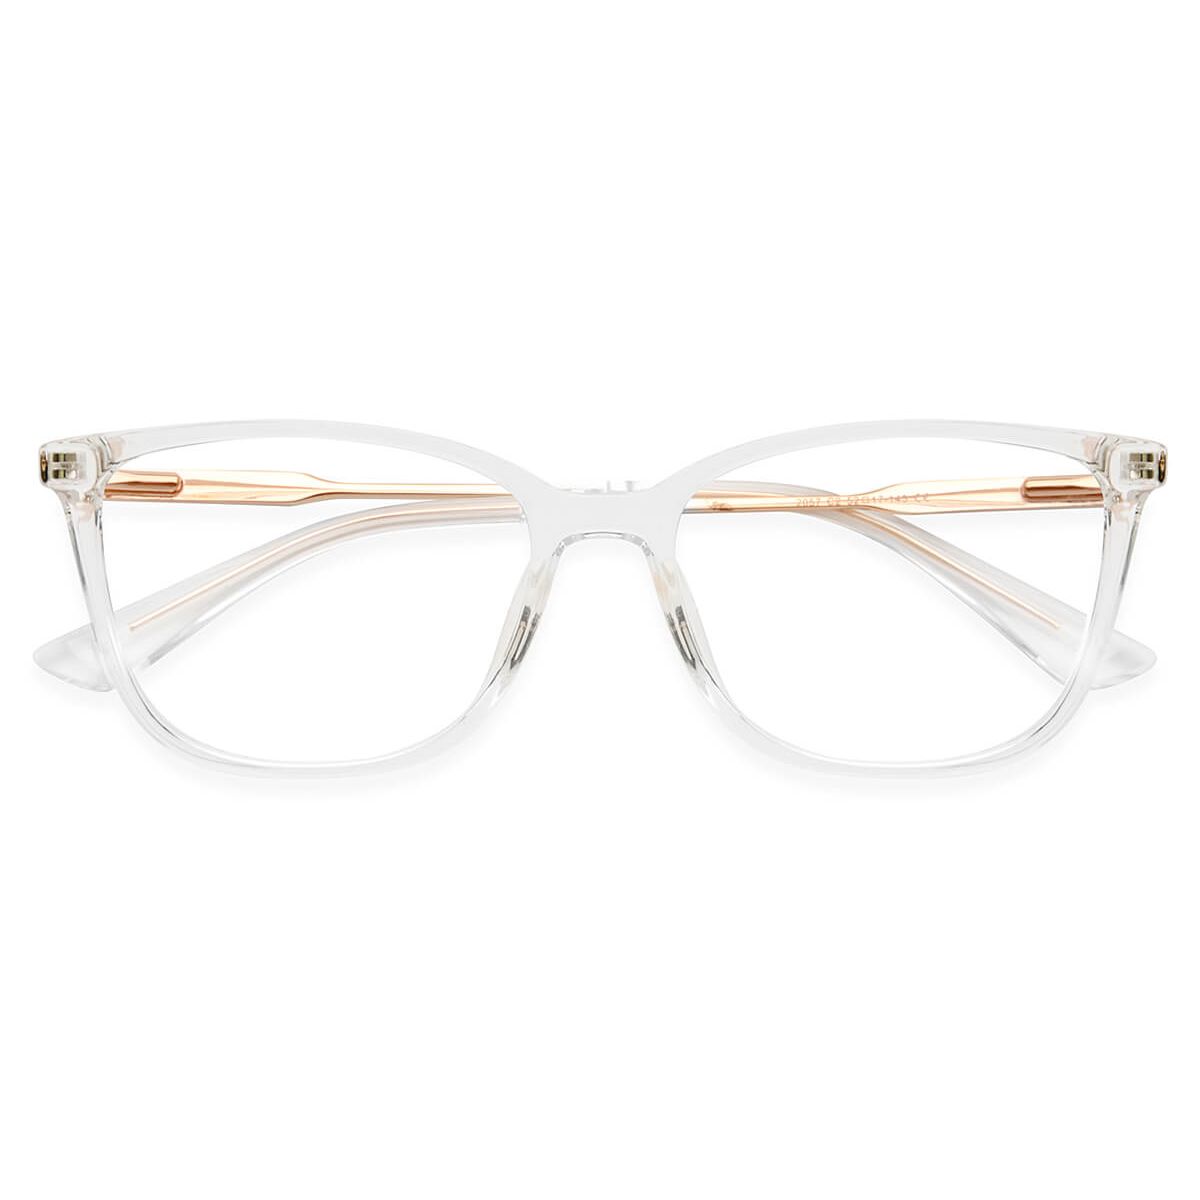 P2057 Cat-eye Clear Eyeglasses Frames | Leoptique